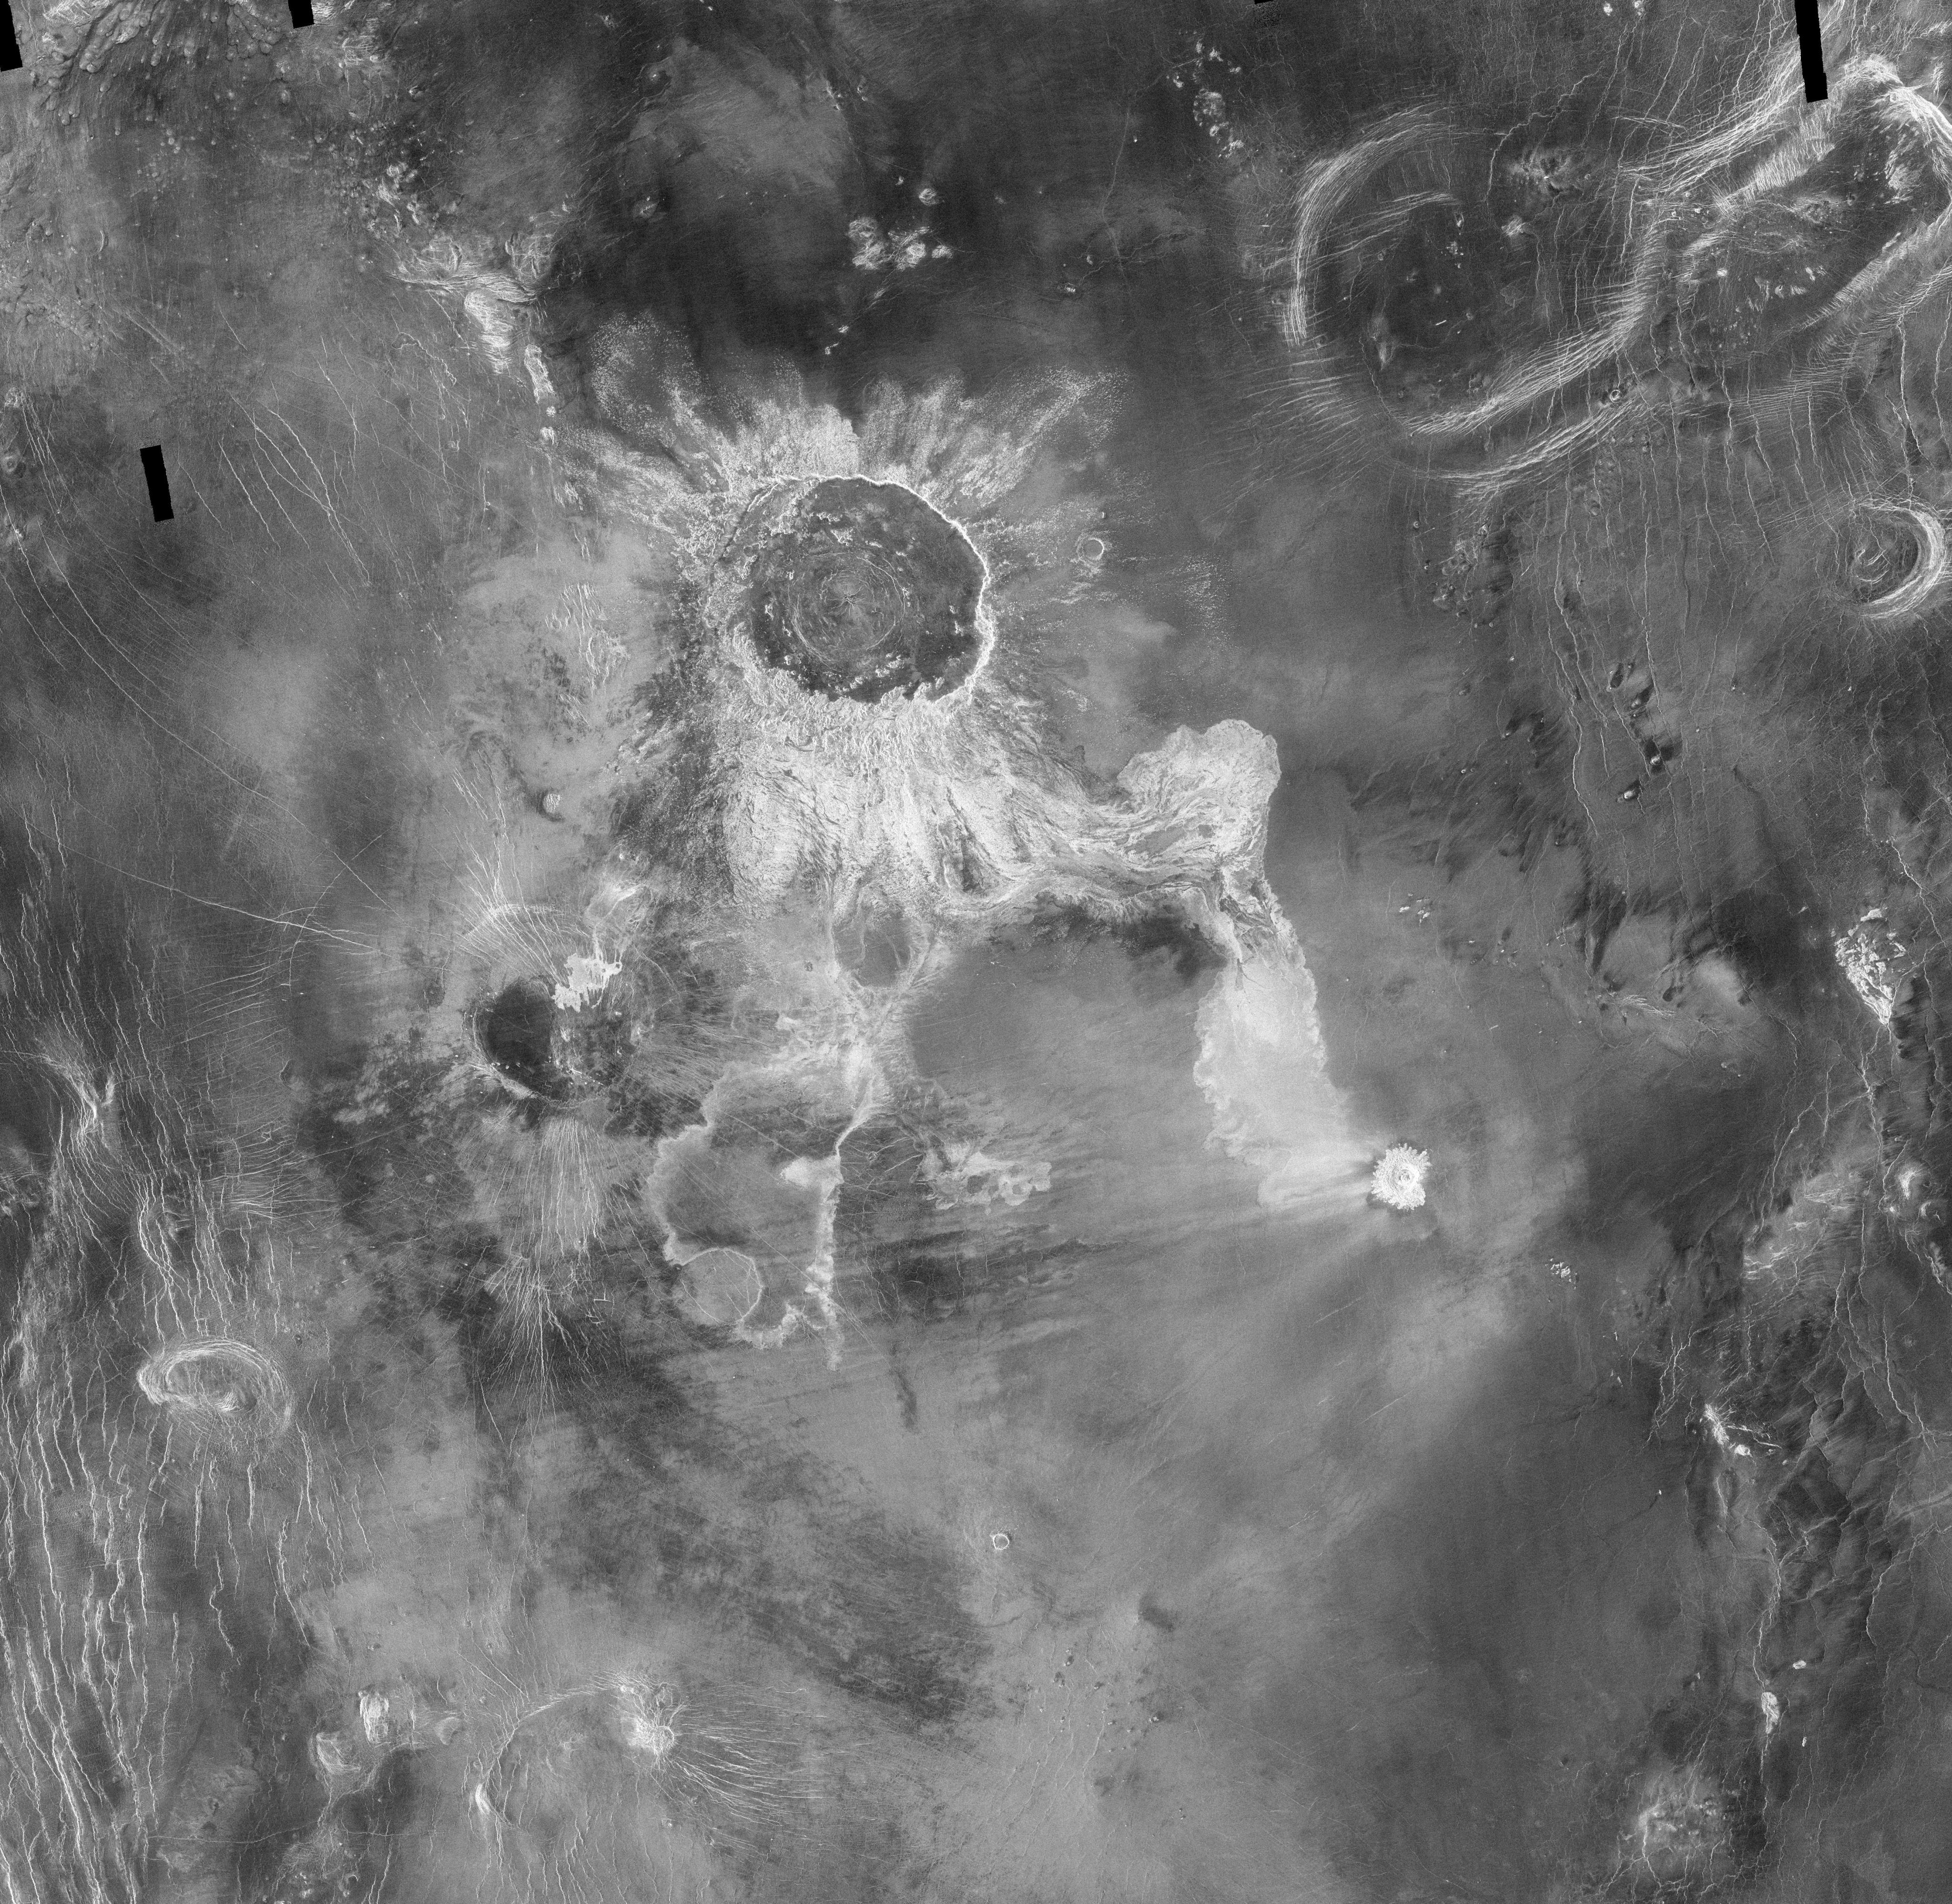 Crater on Venus